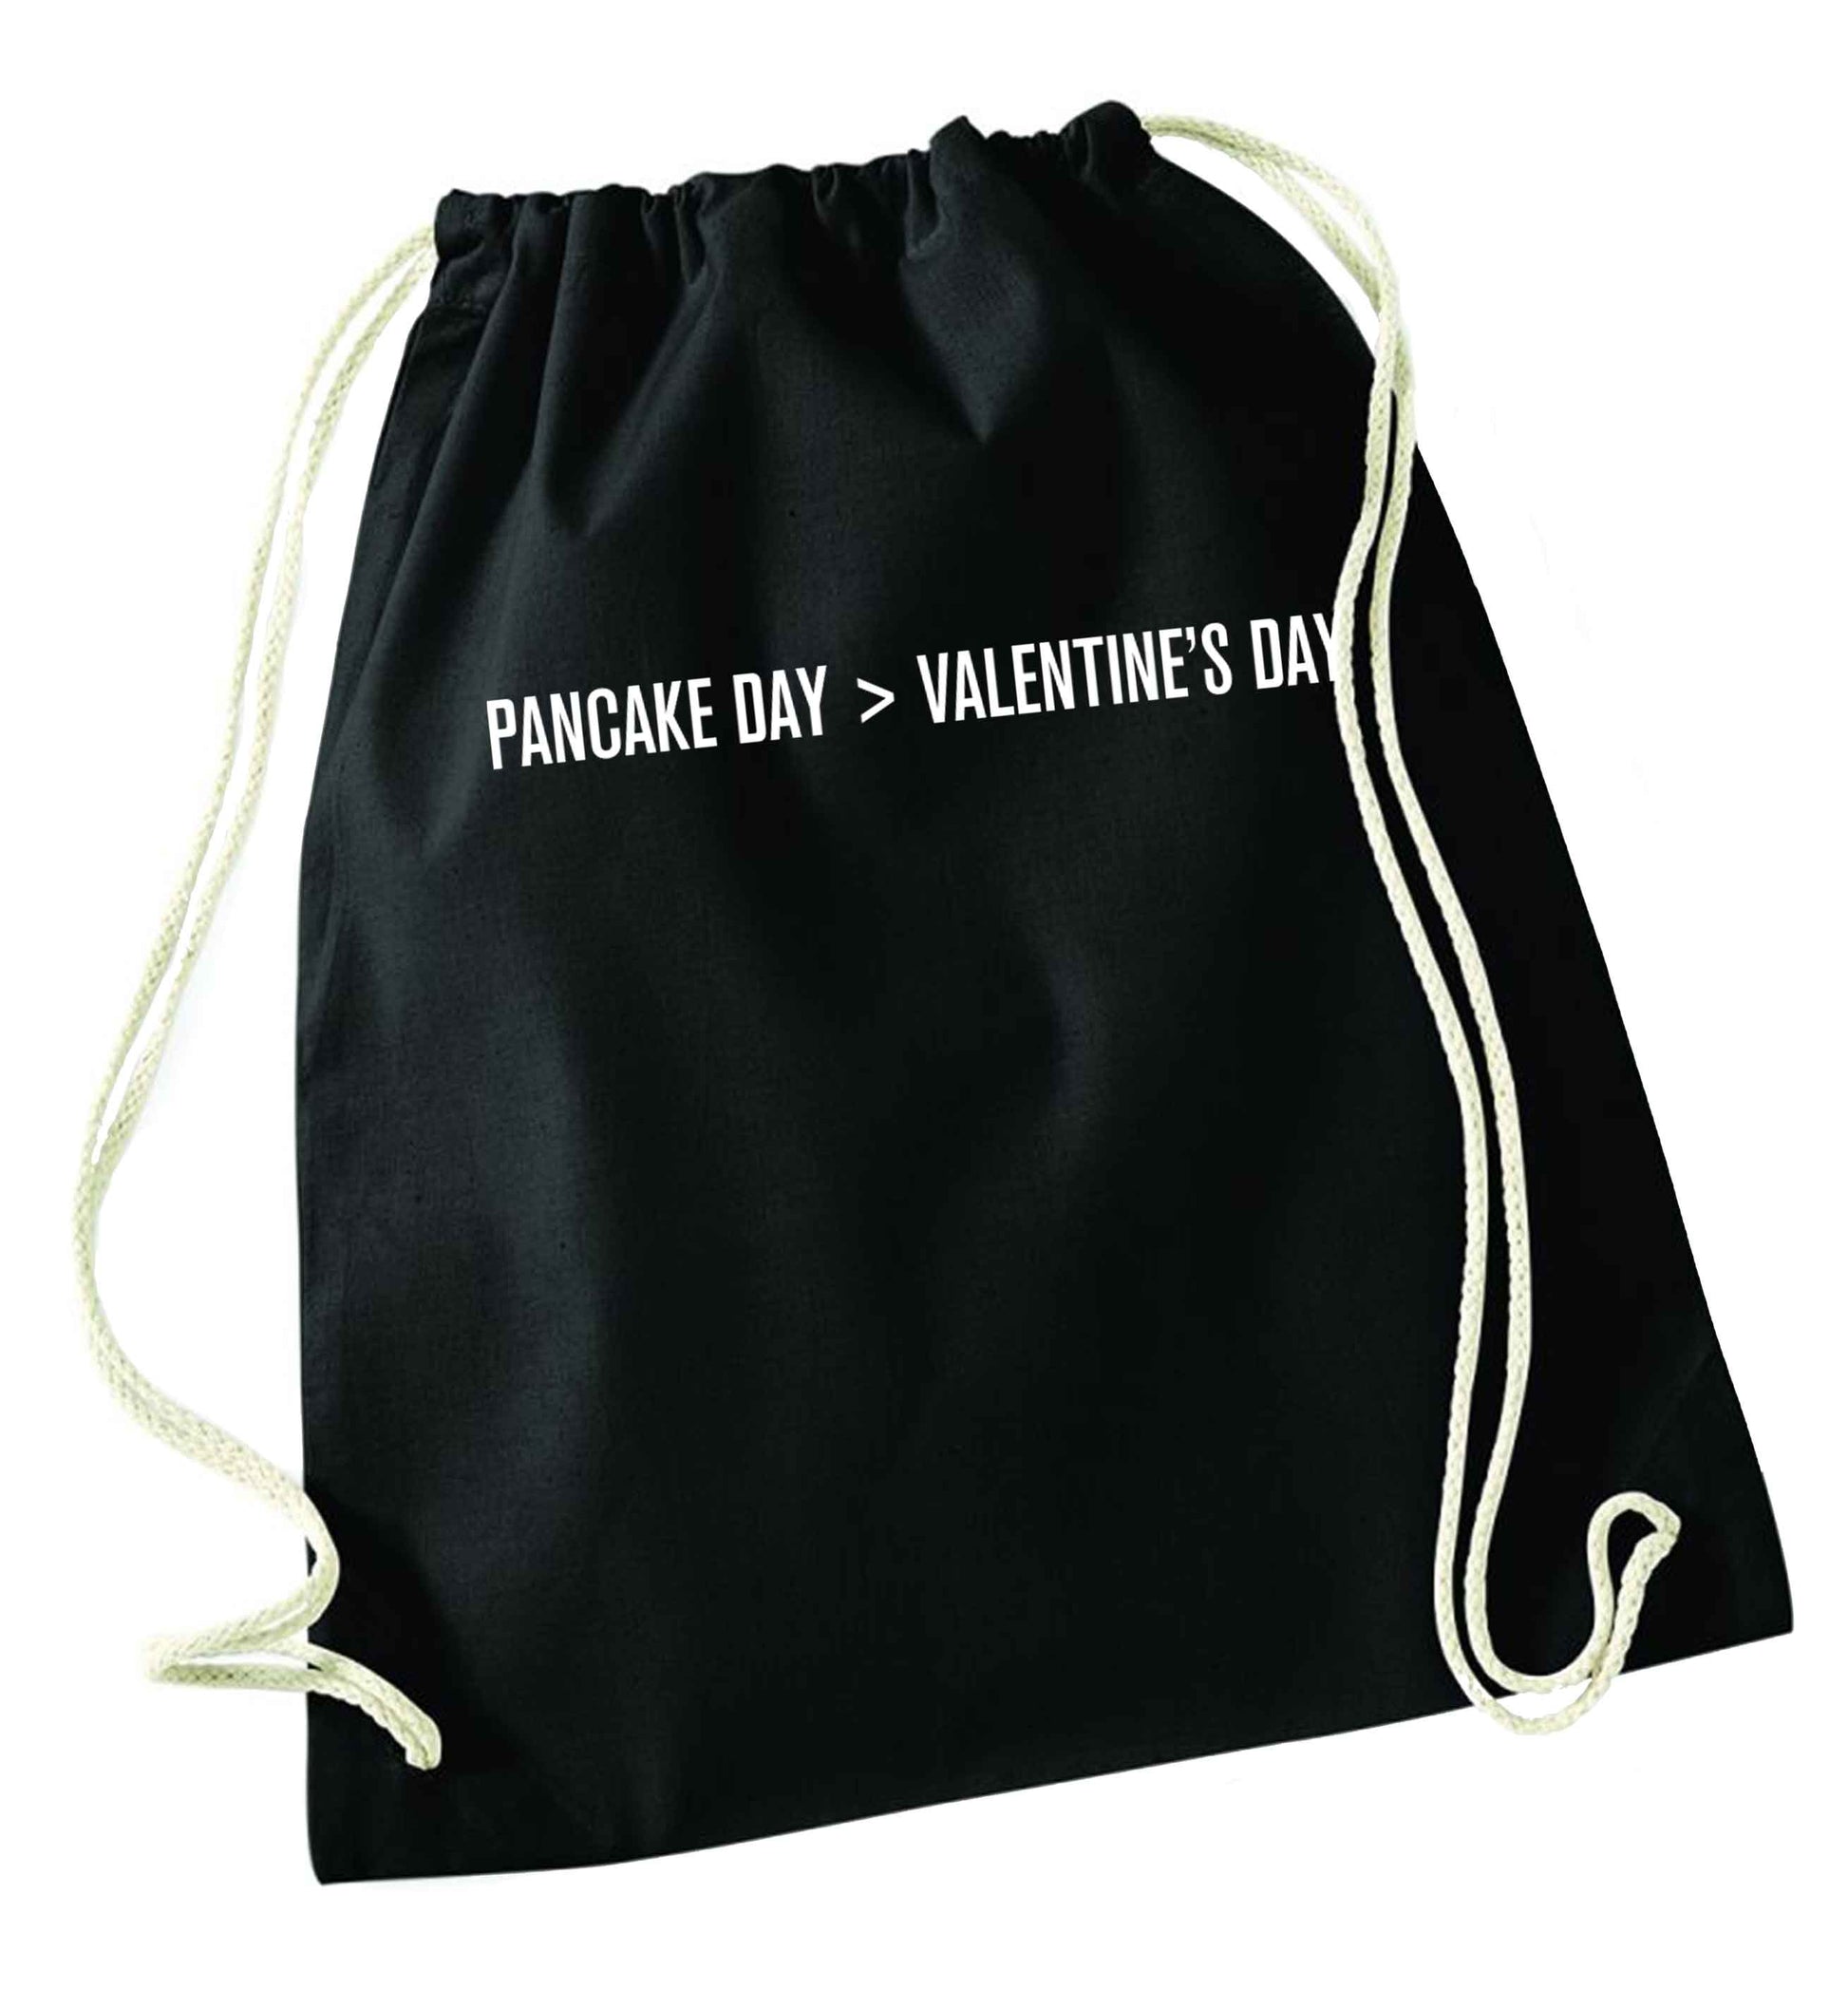 Pancake day > valentines day black drawstring bag